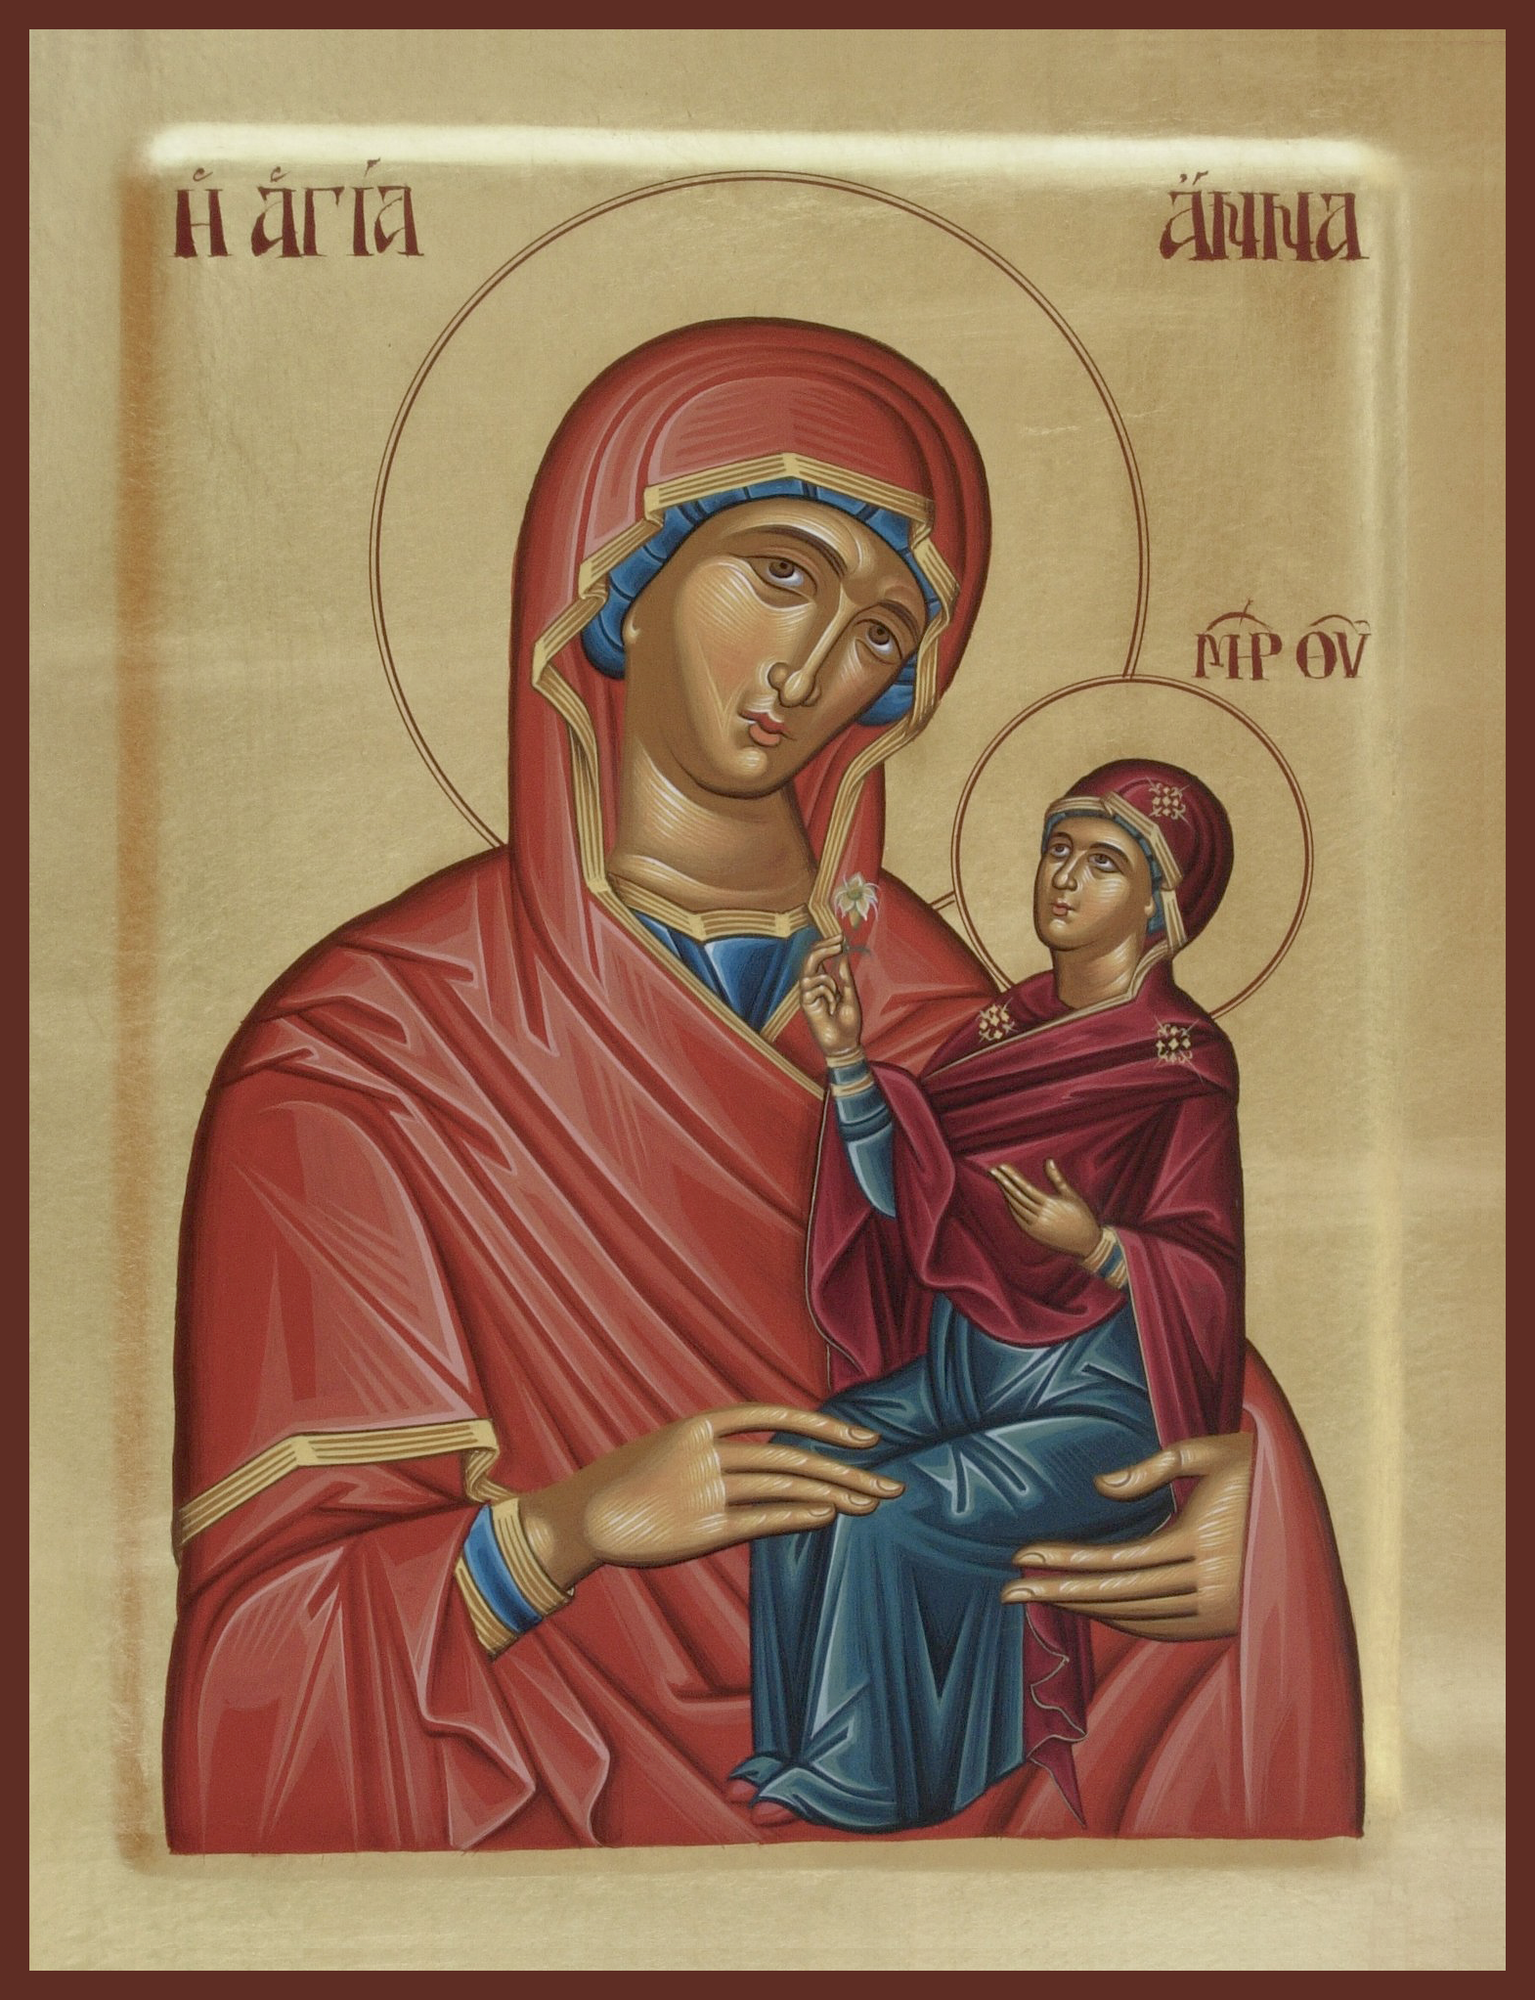 Близько 16-15 року до н. е. свята Анна народила Пресвяту Богородицю Діву Марію